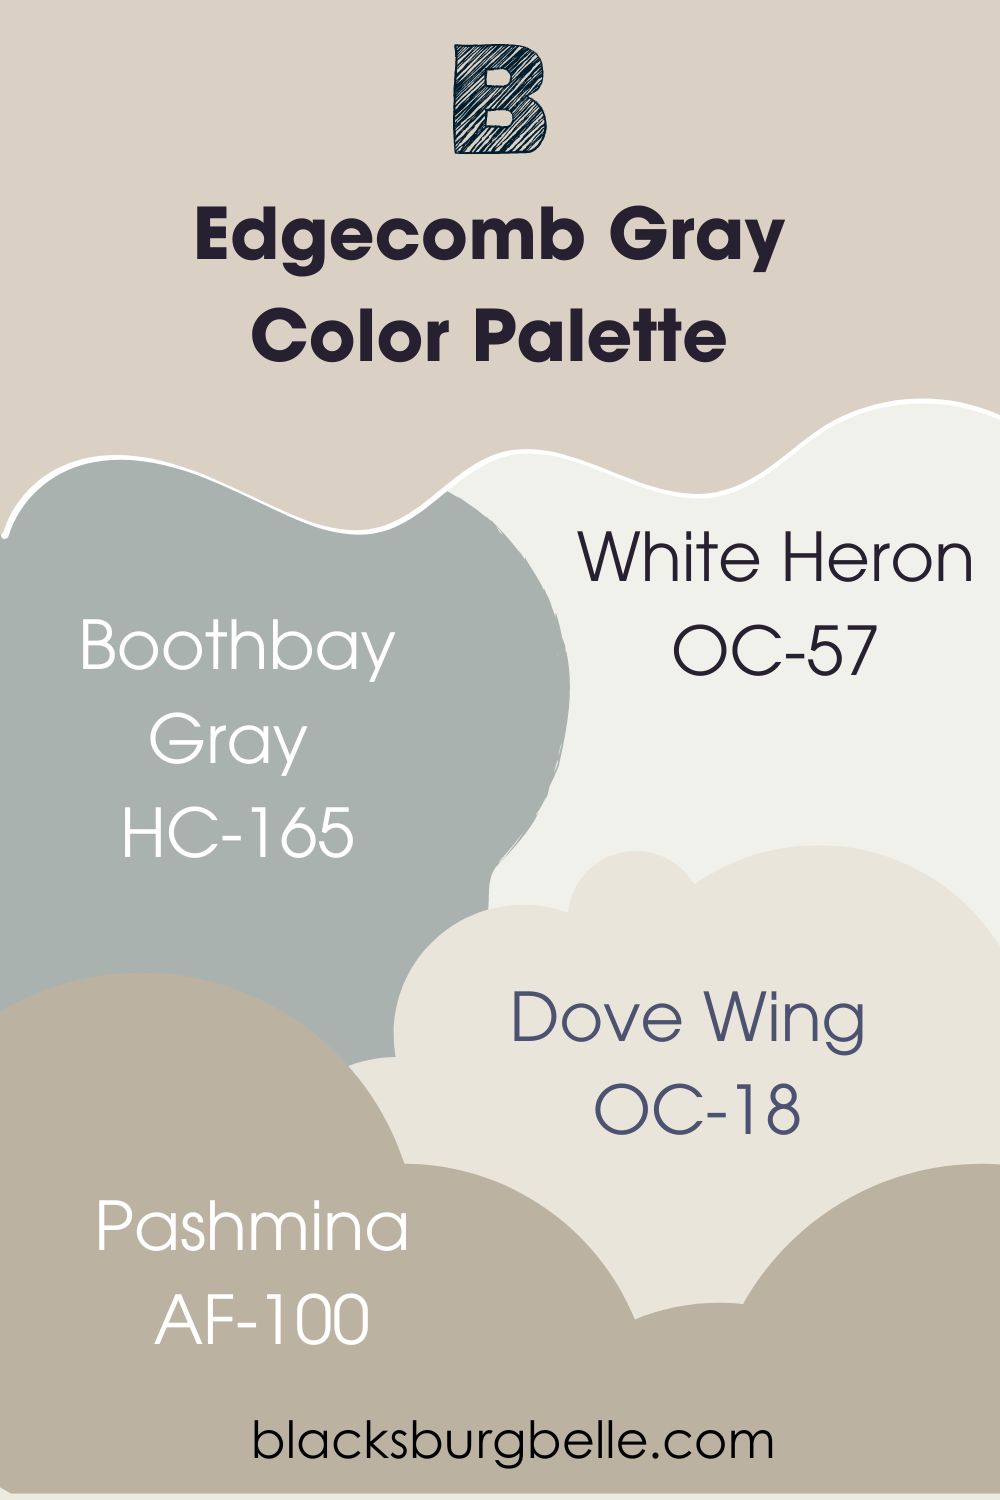 Edgecomb Gray Color Palette